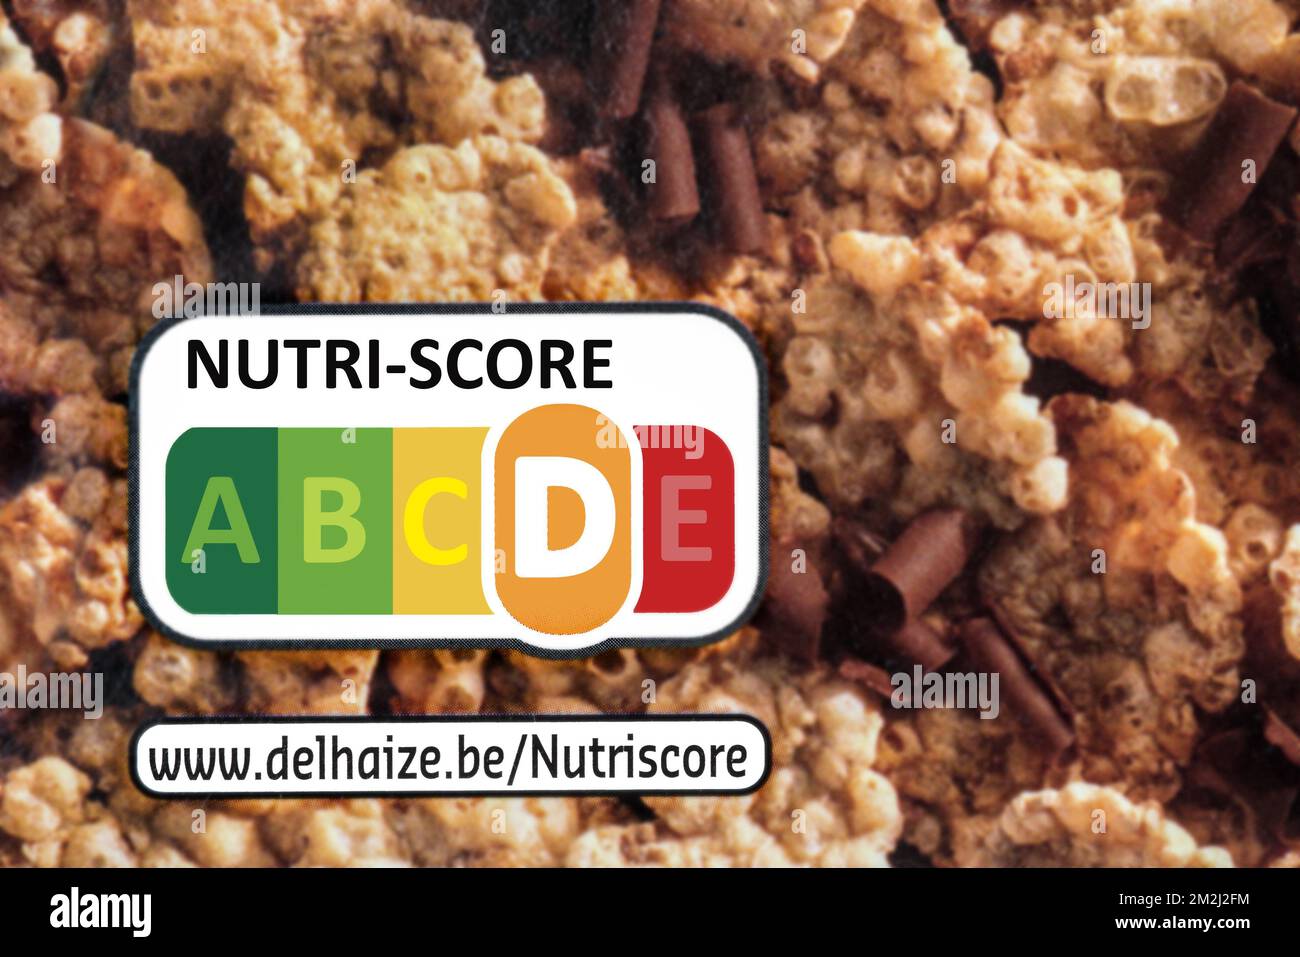 Nutritional label Nutri score on box of Delhaize Super Crunchy Flakes | Nutri-score, indicateur sur emballage alimentaire, appréciation de la qualité nutritionnelle du produit 23/08/2018 Stock Photo